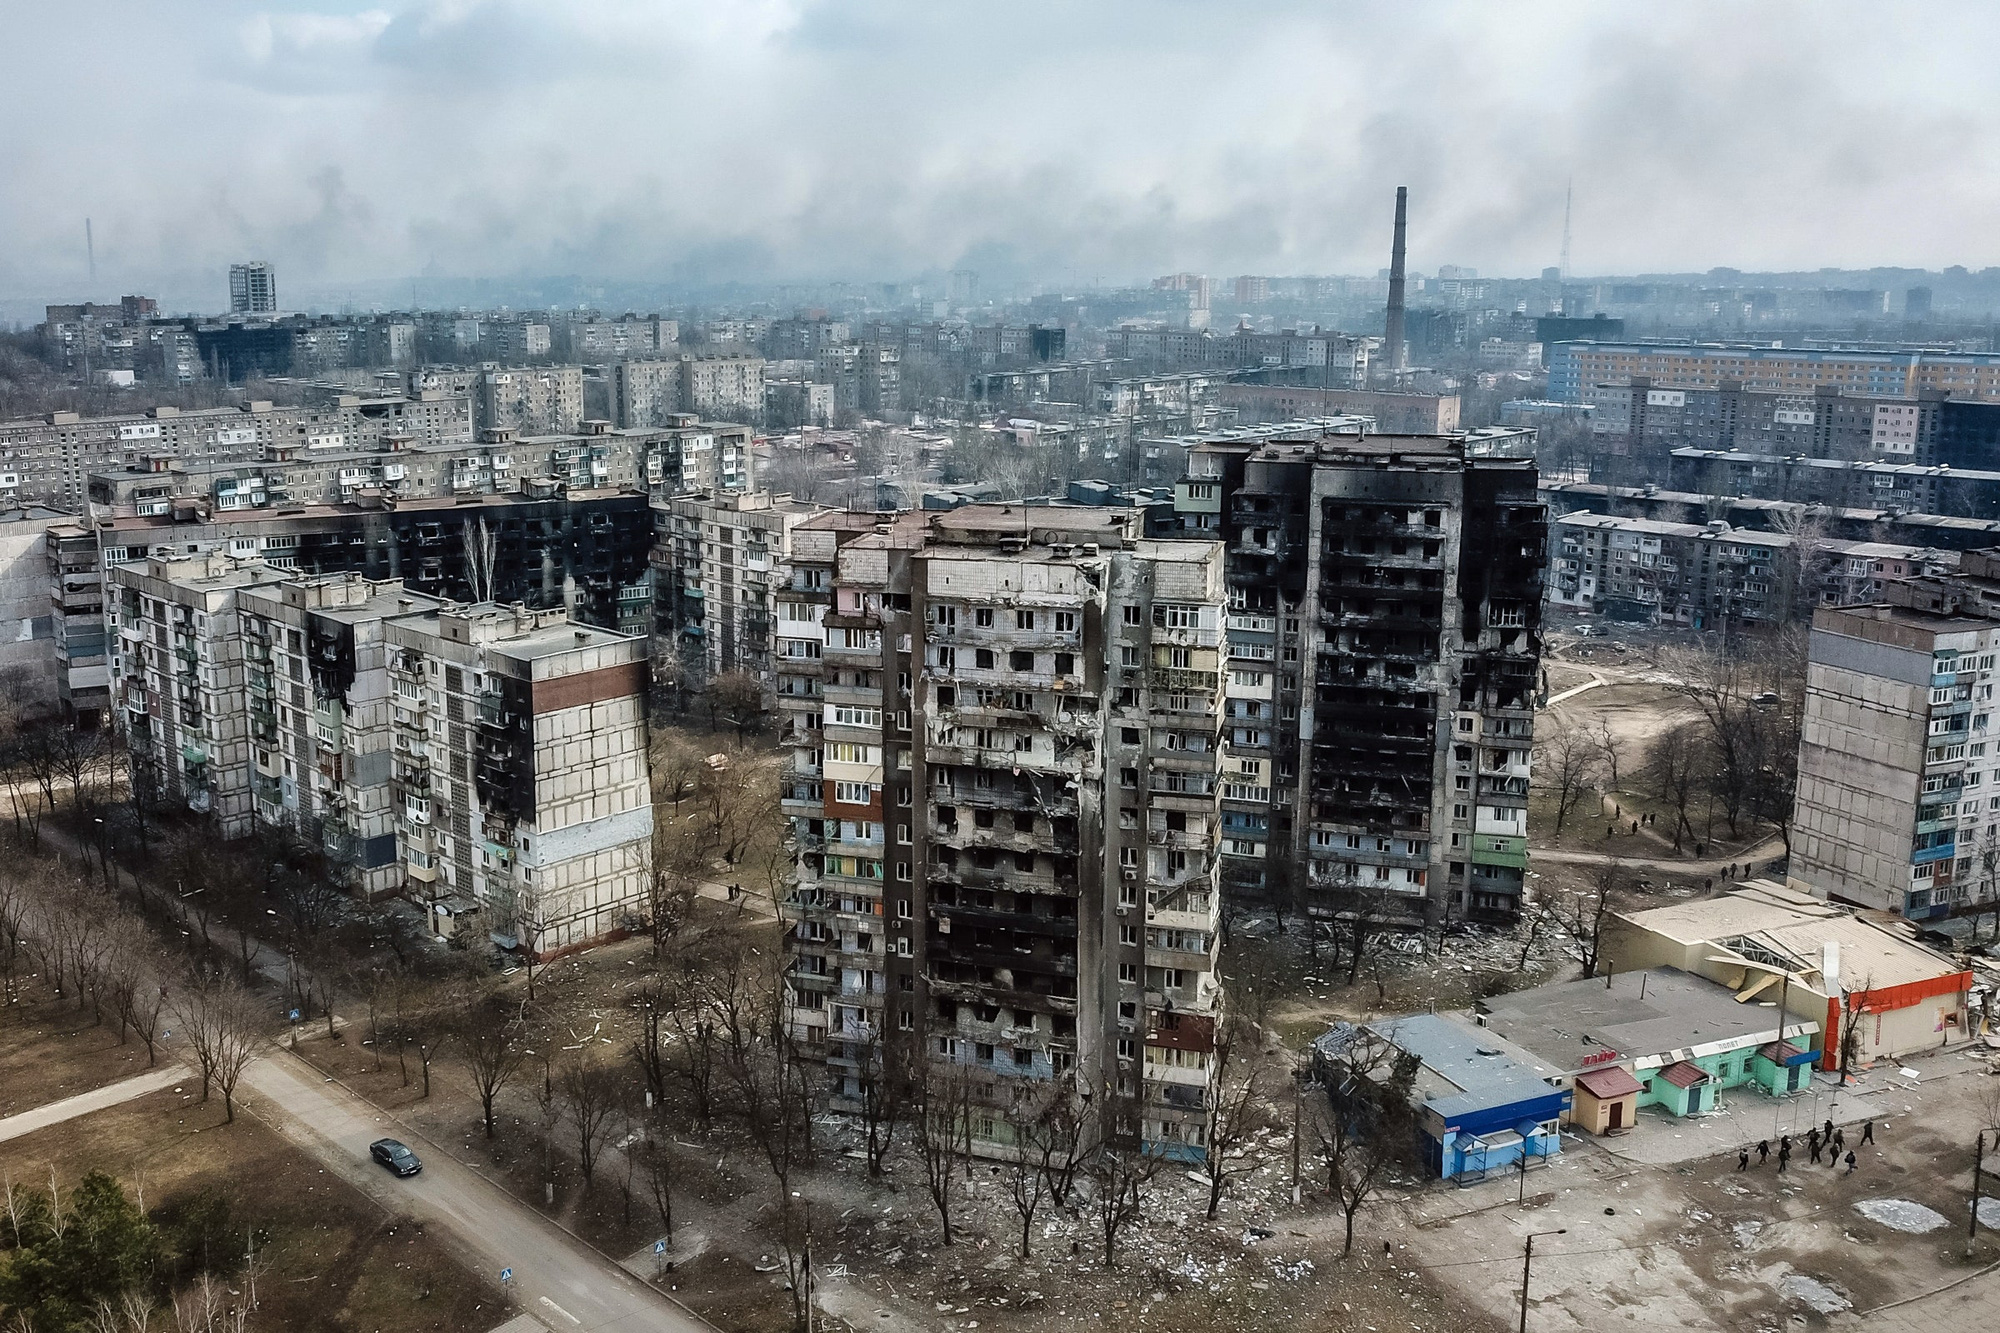 Đau thương chiến tranh: Hình ảnh tan hoang cho thấy cả một thành phố Ukraine gần như bị phá huỷ vì bom đạn, chỉ còn lại đống đổ nát - Ảnh 5.